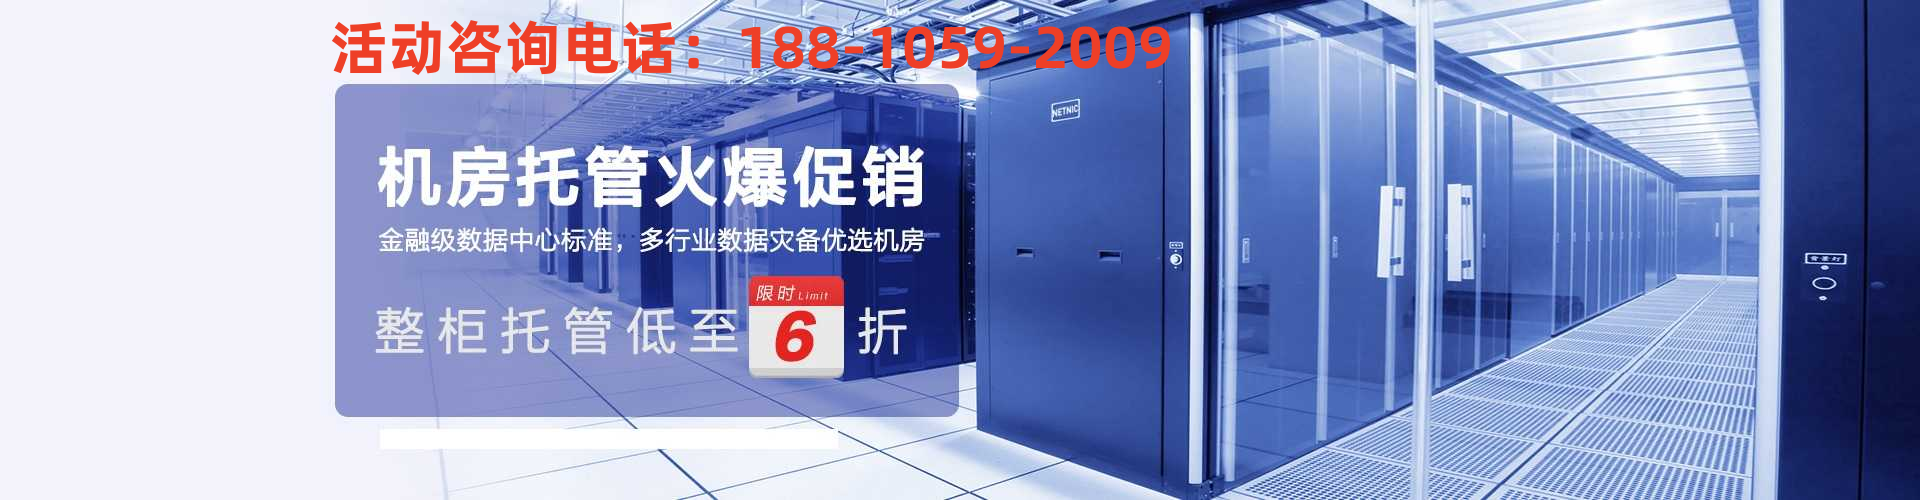 北京高电机房/北京高电机柜租用/GPU服务器托管/北京超算国家数据中心